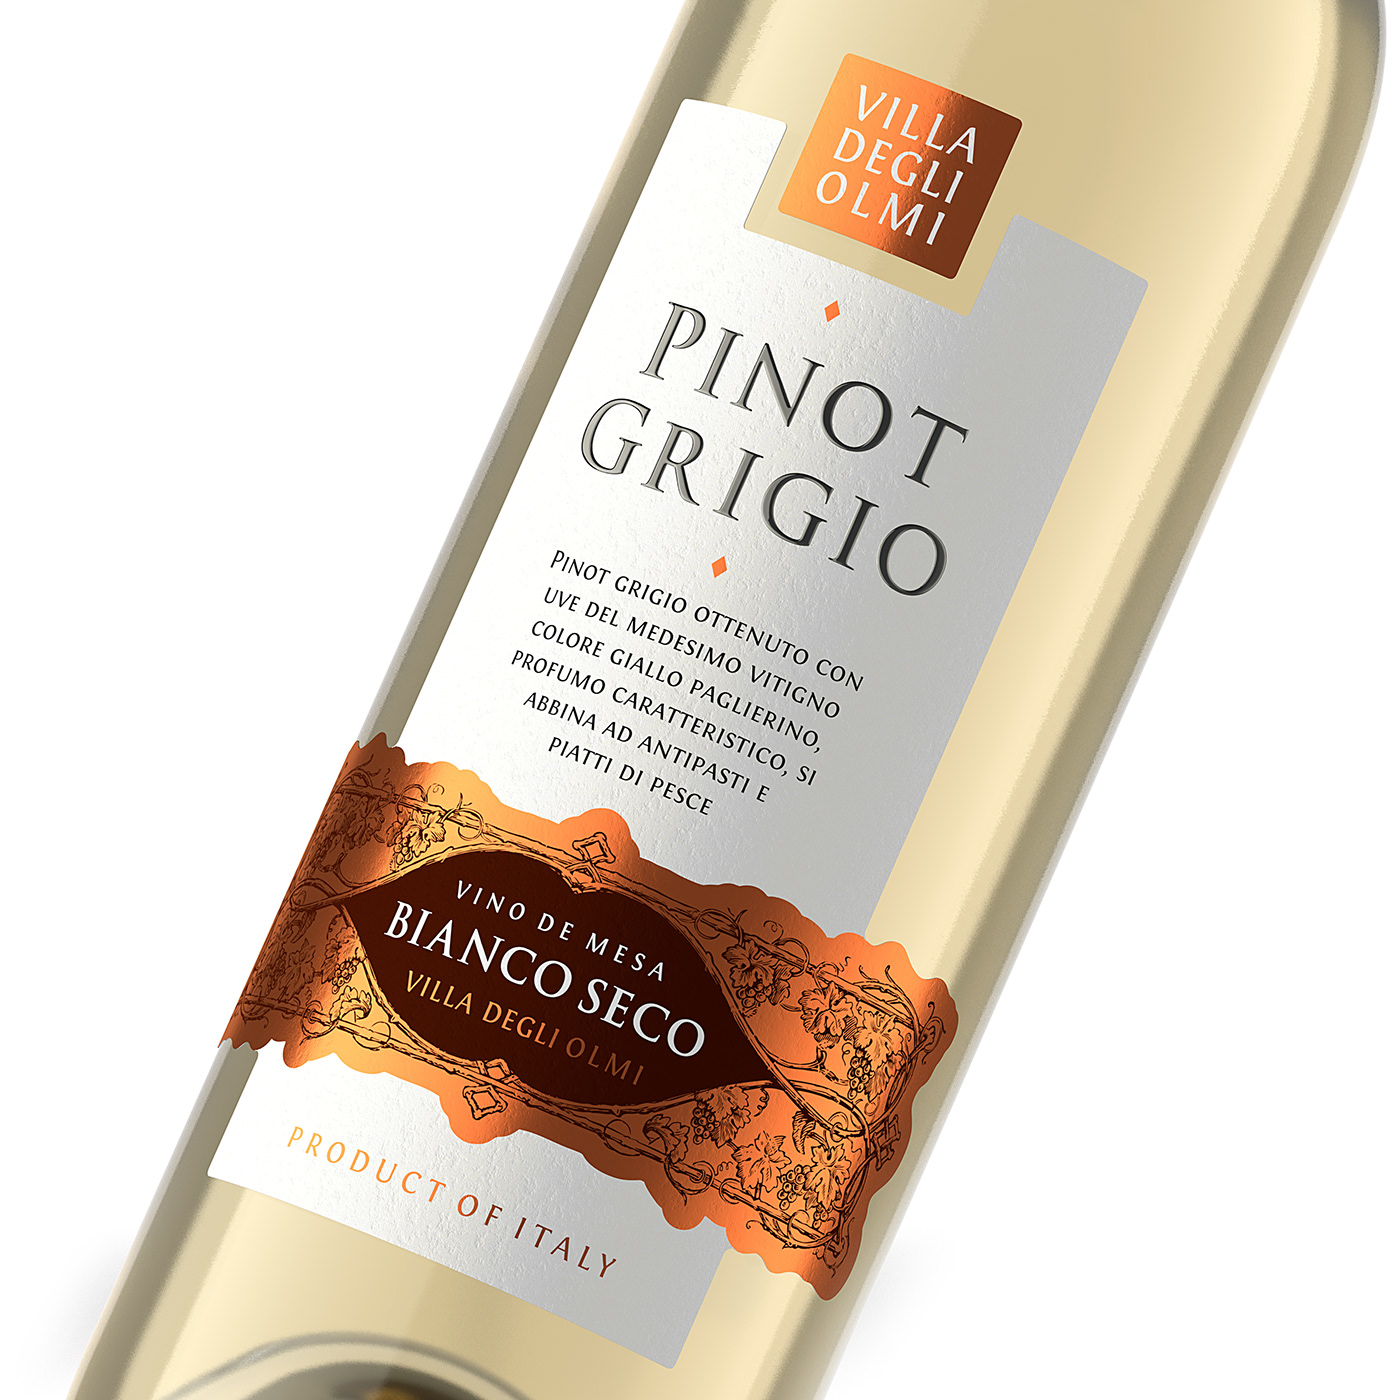 shumilovedesign valerii sumilov pinot grigio italian wine wine label design packaging design Packaging graphic design 